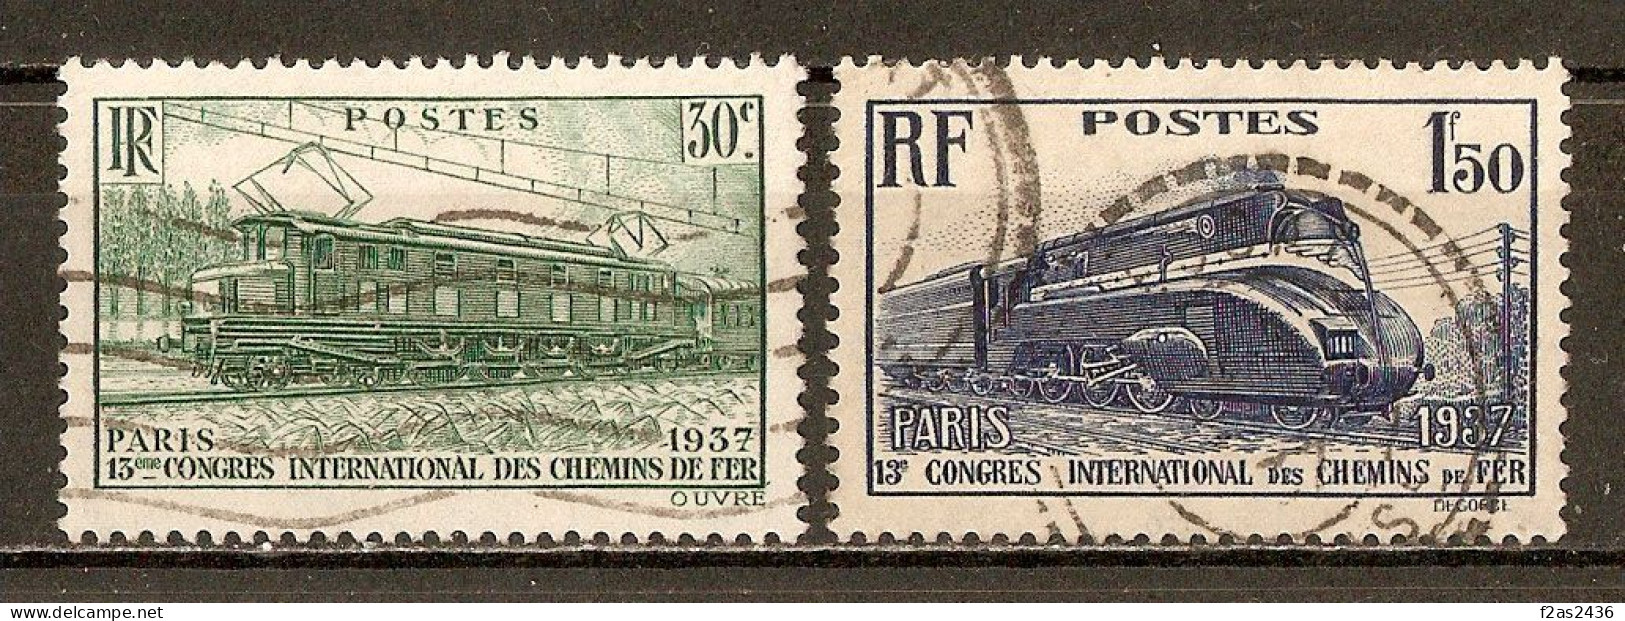 1937 - 13e Congrès International Des Chemins De Fer, à Paris - N°339/340 (cote 10€) - Used Stamps